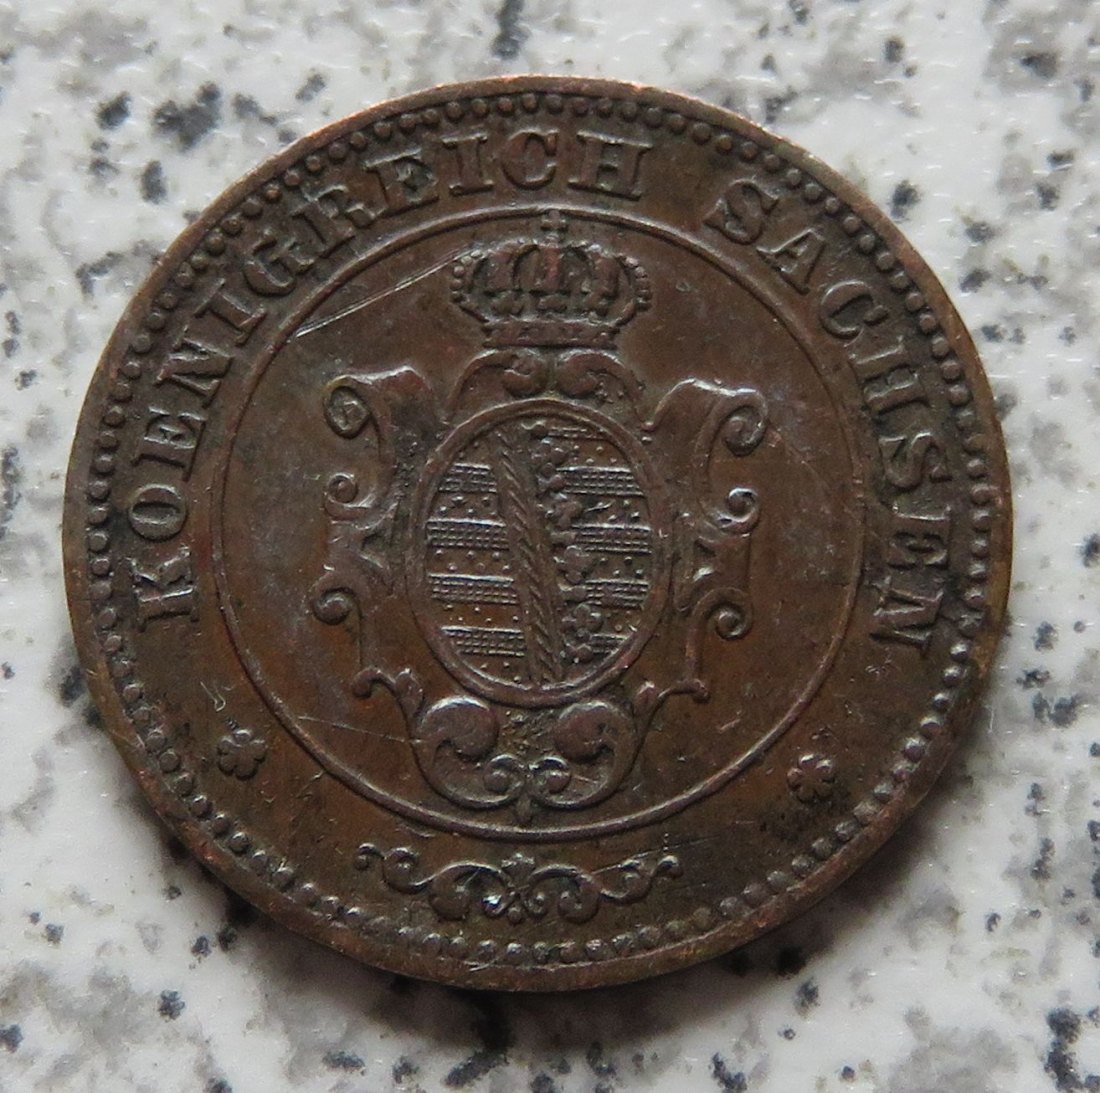  Sachsen 1 Pfennig 1863 B, viele Kratzer!   